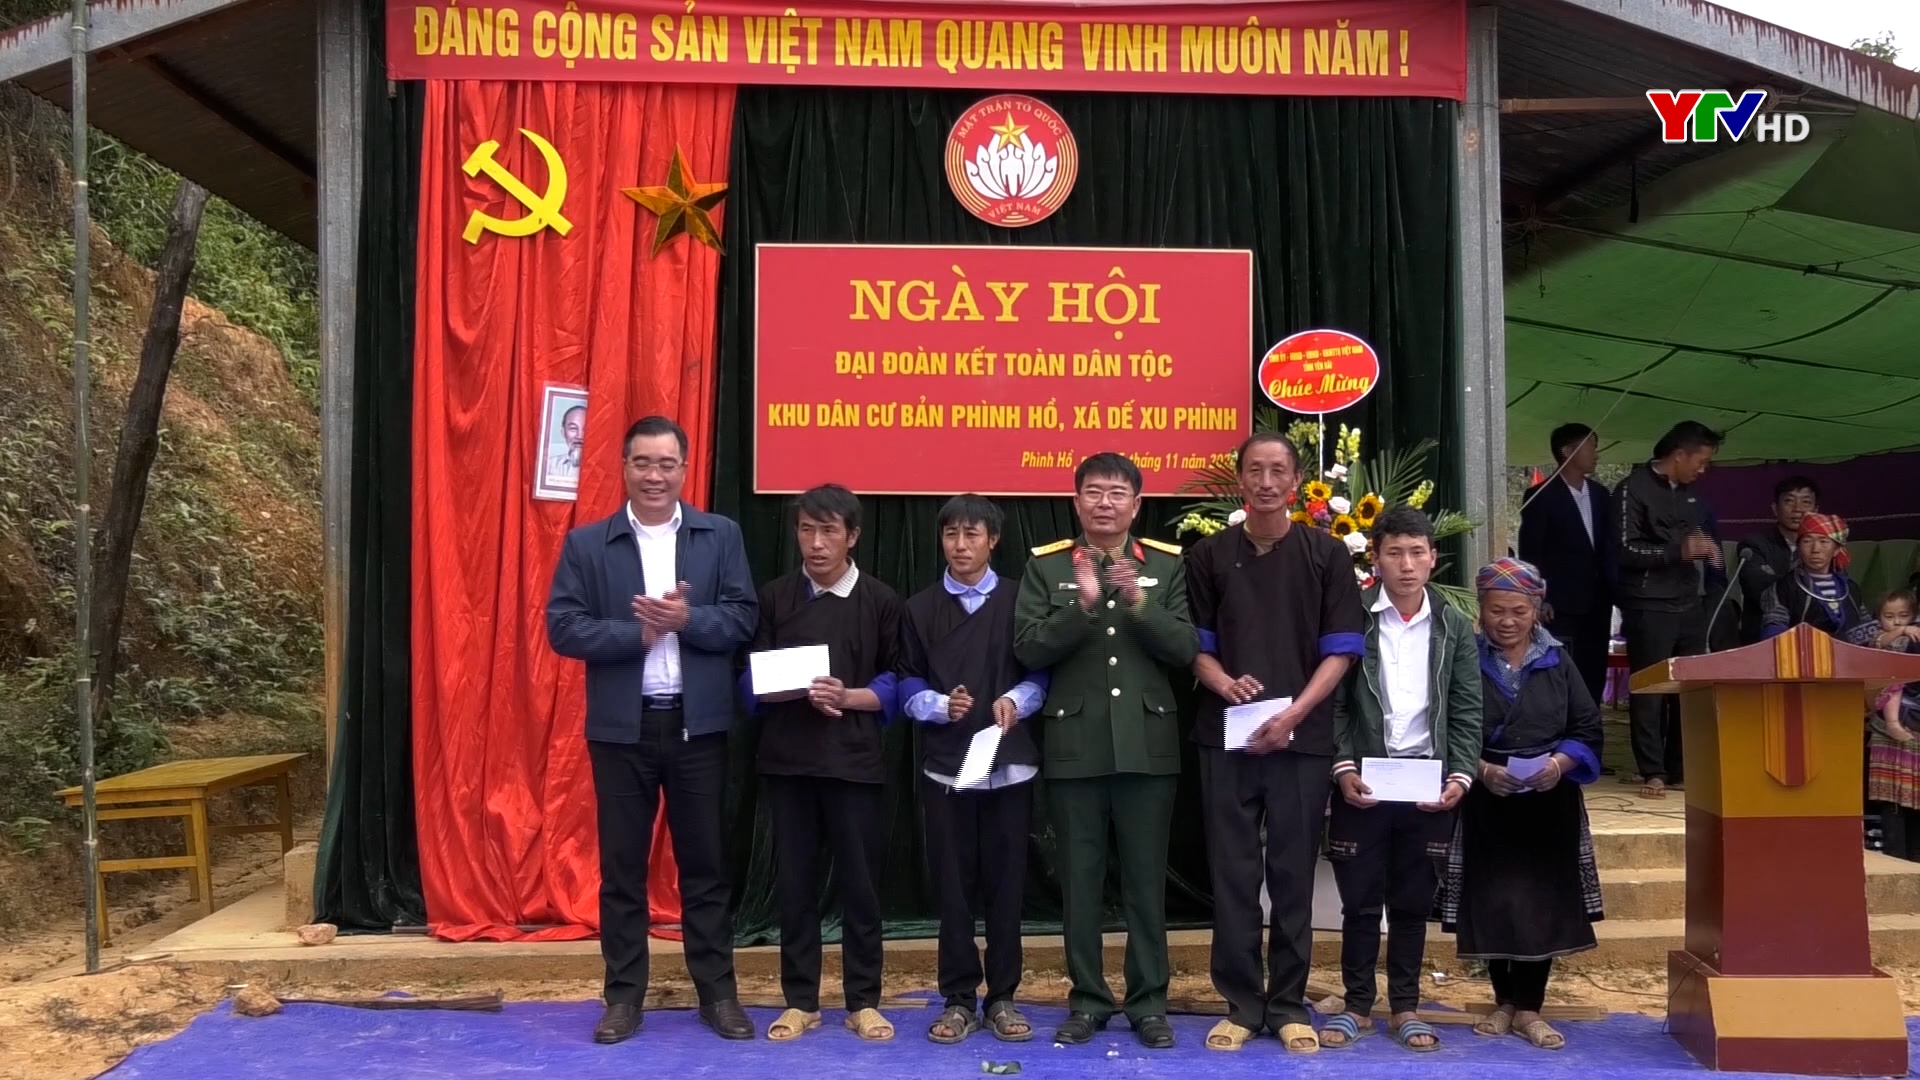 Đại tá Trần Công Ứng - Chỉ huy trưởng Bộ Chỉ huy quân sự tỉnh dự Ngày hội đại đoàn kết tại xã Dế Xu Phình, huyện Mù Cang Chải